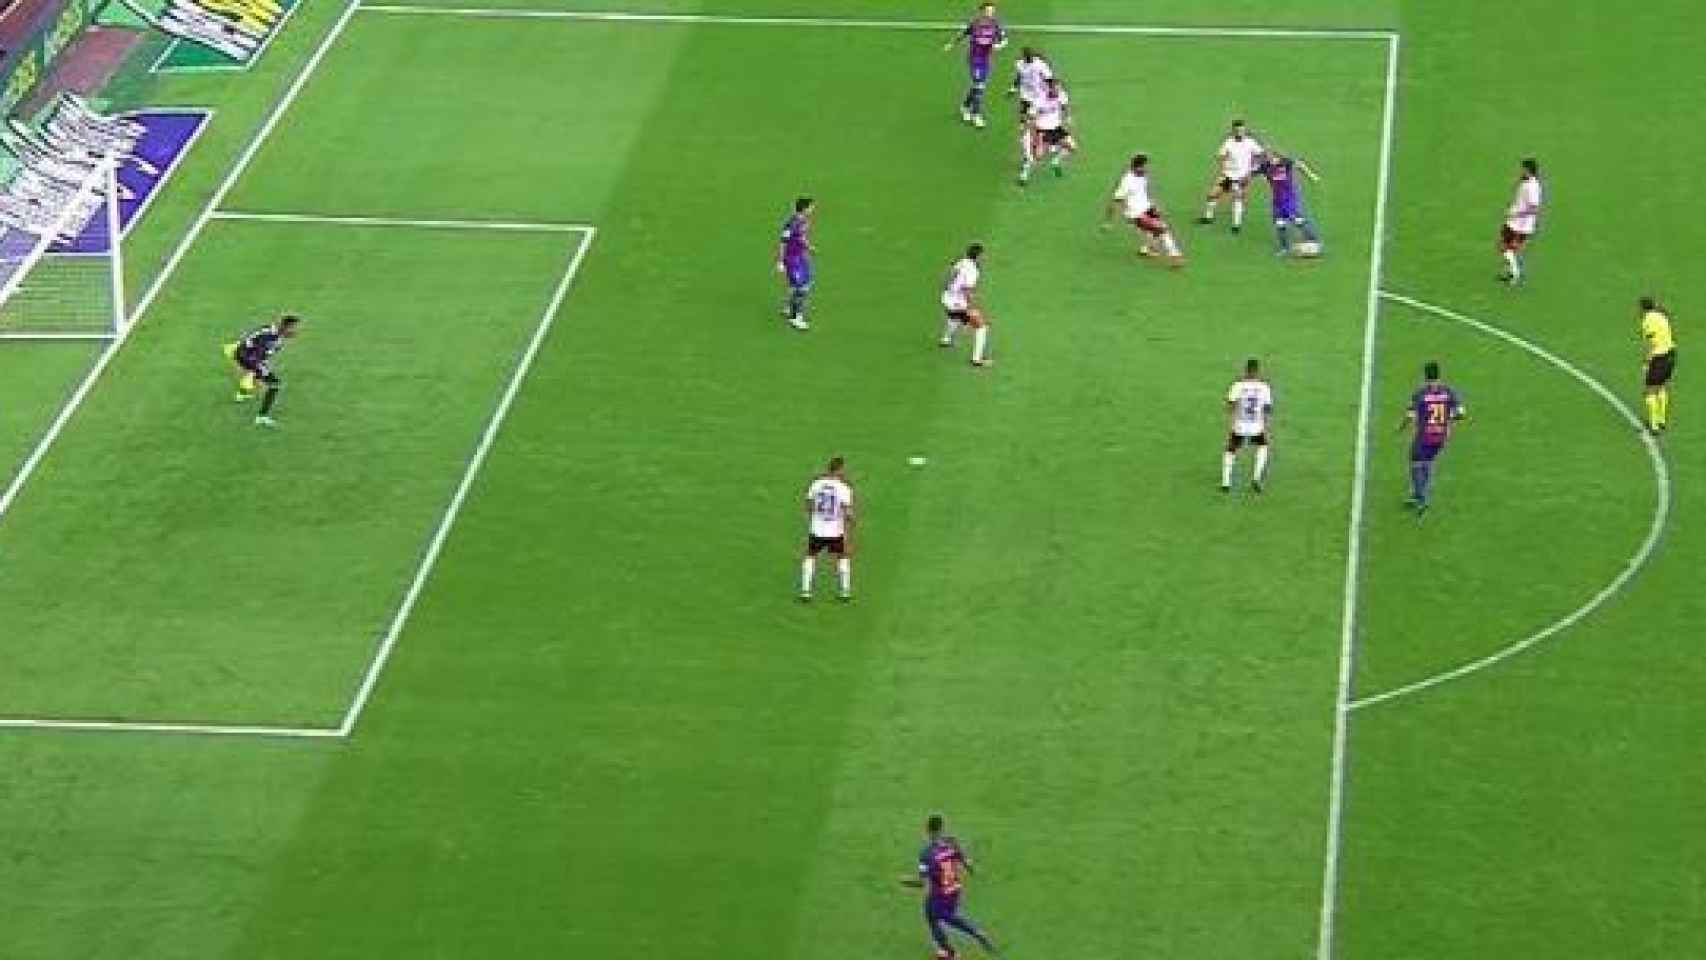 Gol de Messi con Luis Suárez en fuera de juego.